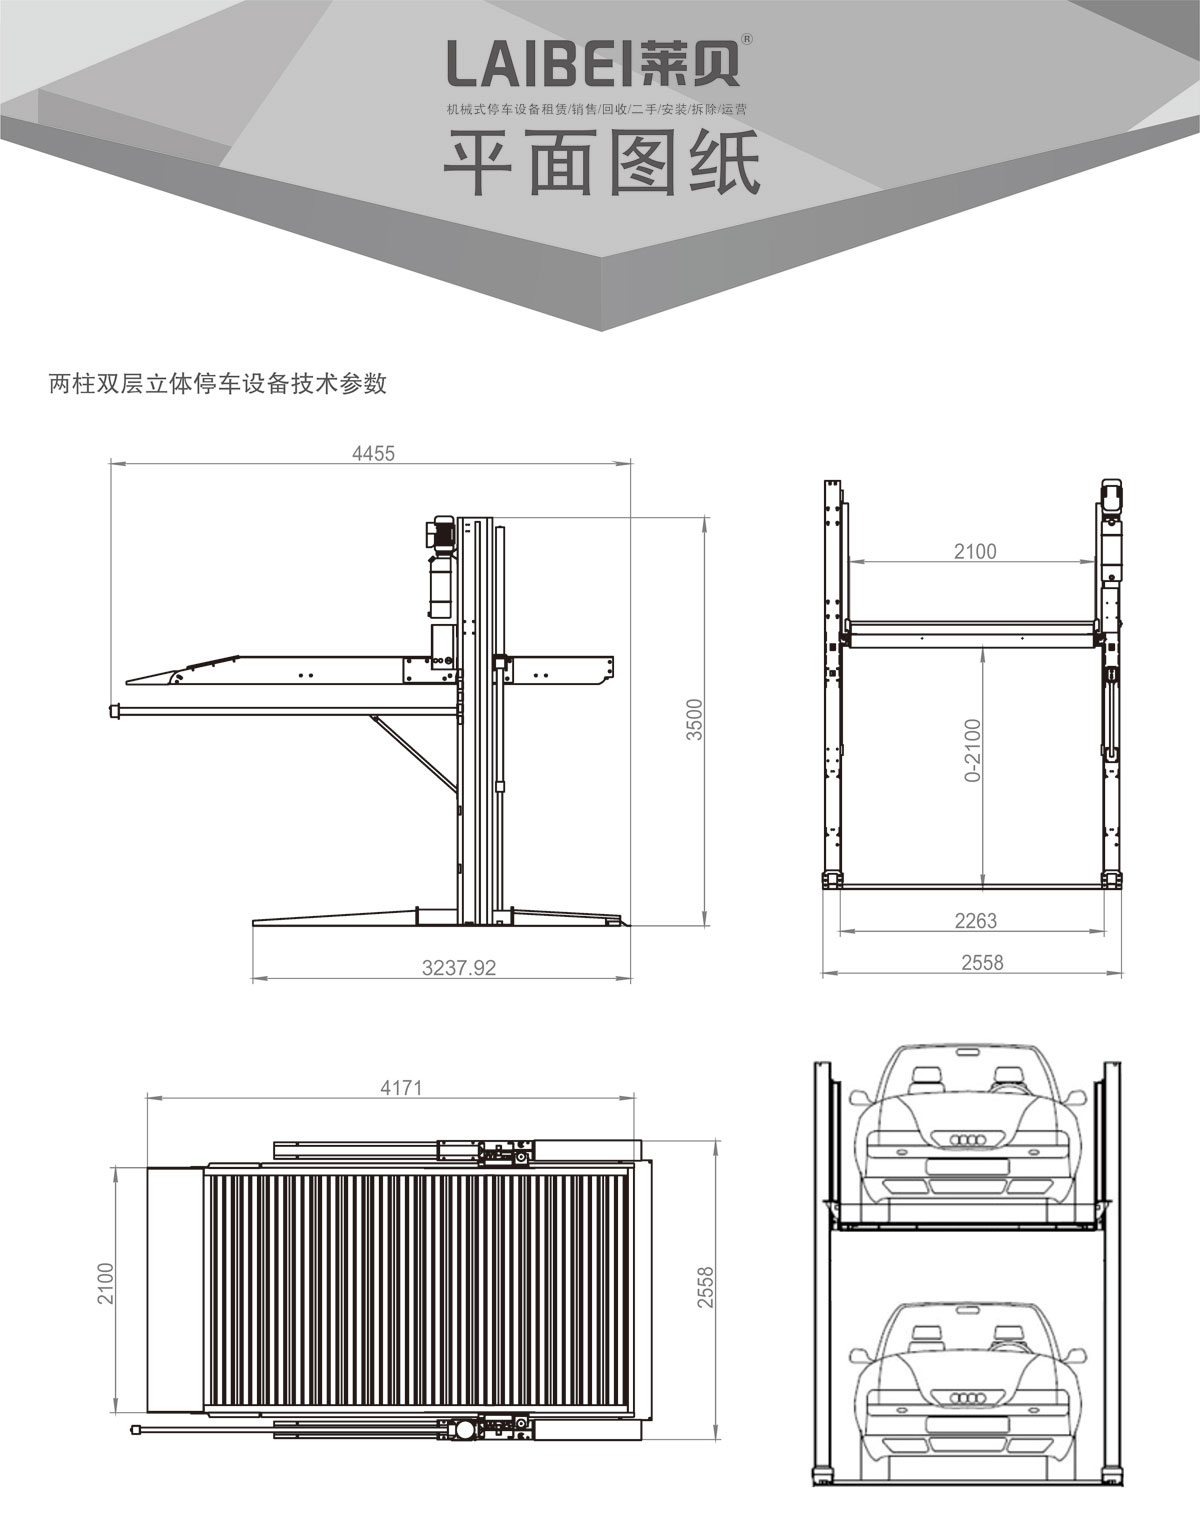 贵阳莱贝PJS两柱简易升降机械式立体停车库平面图纸.jpg